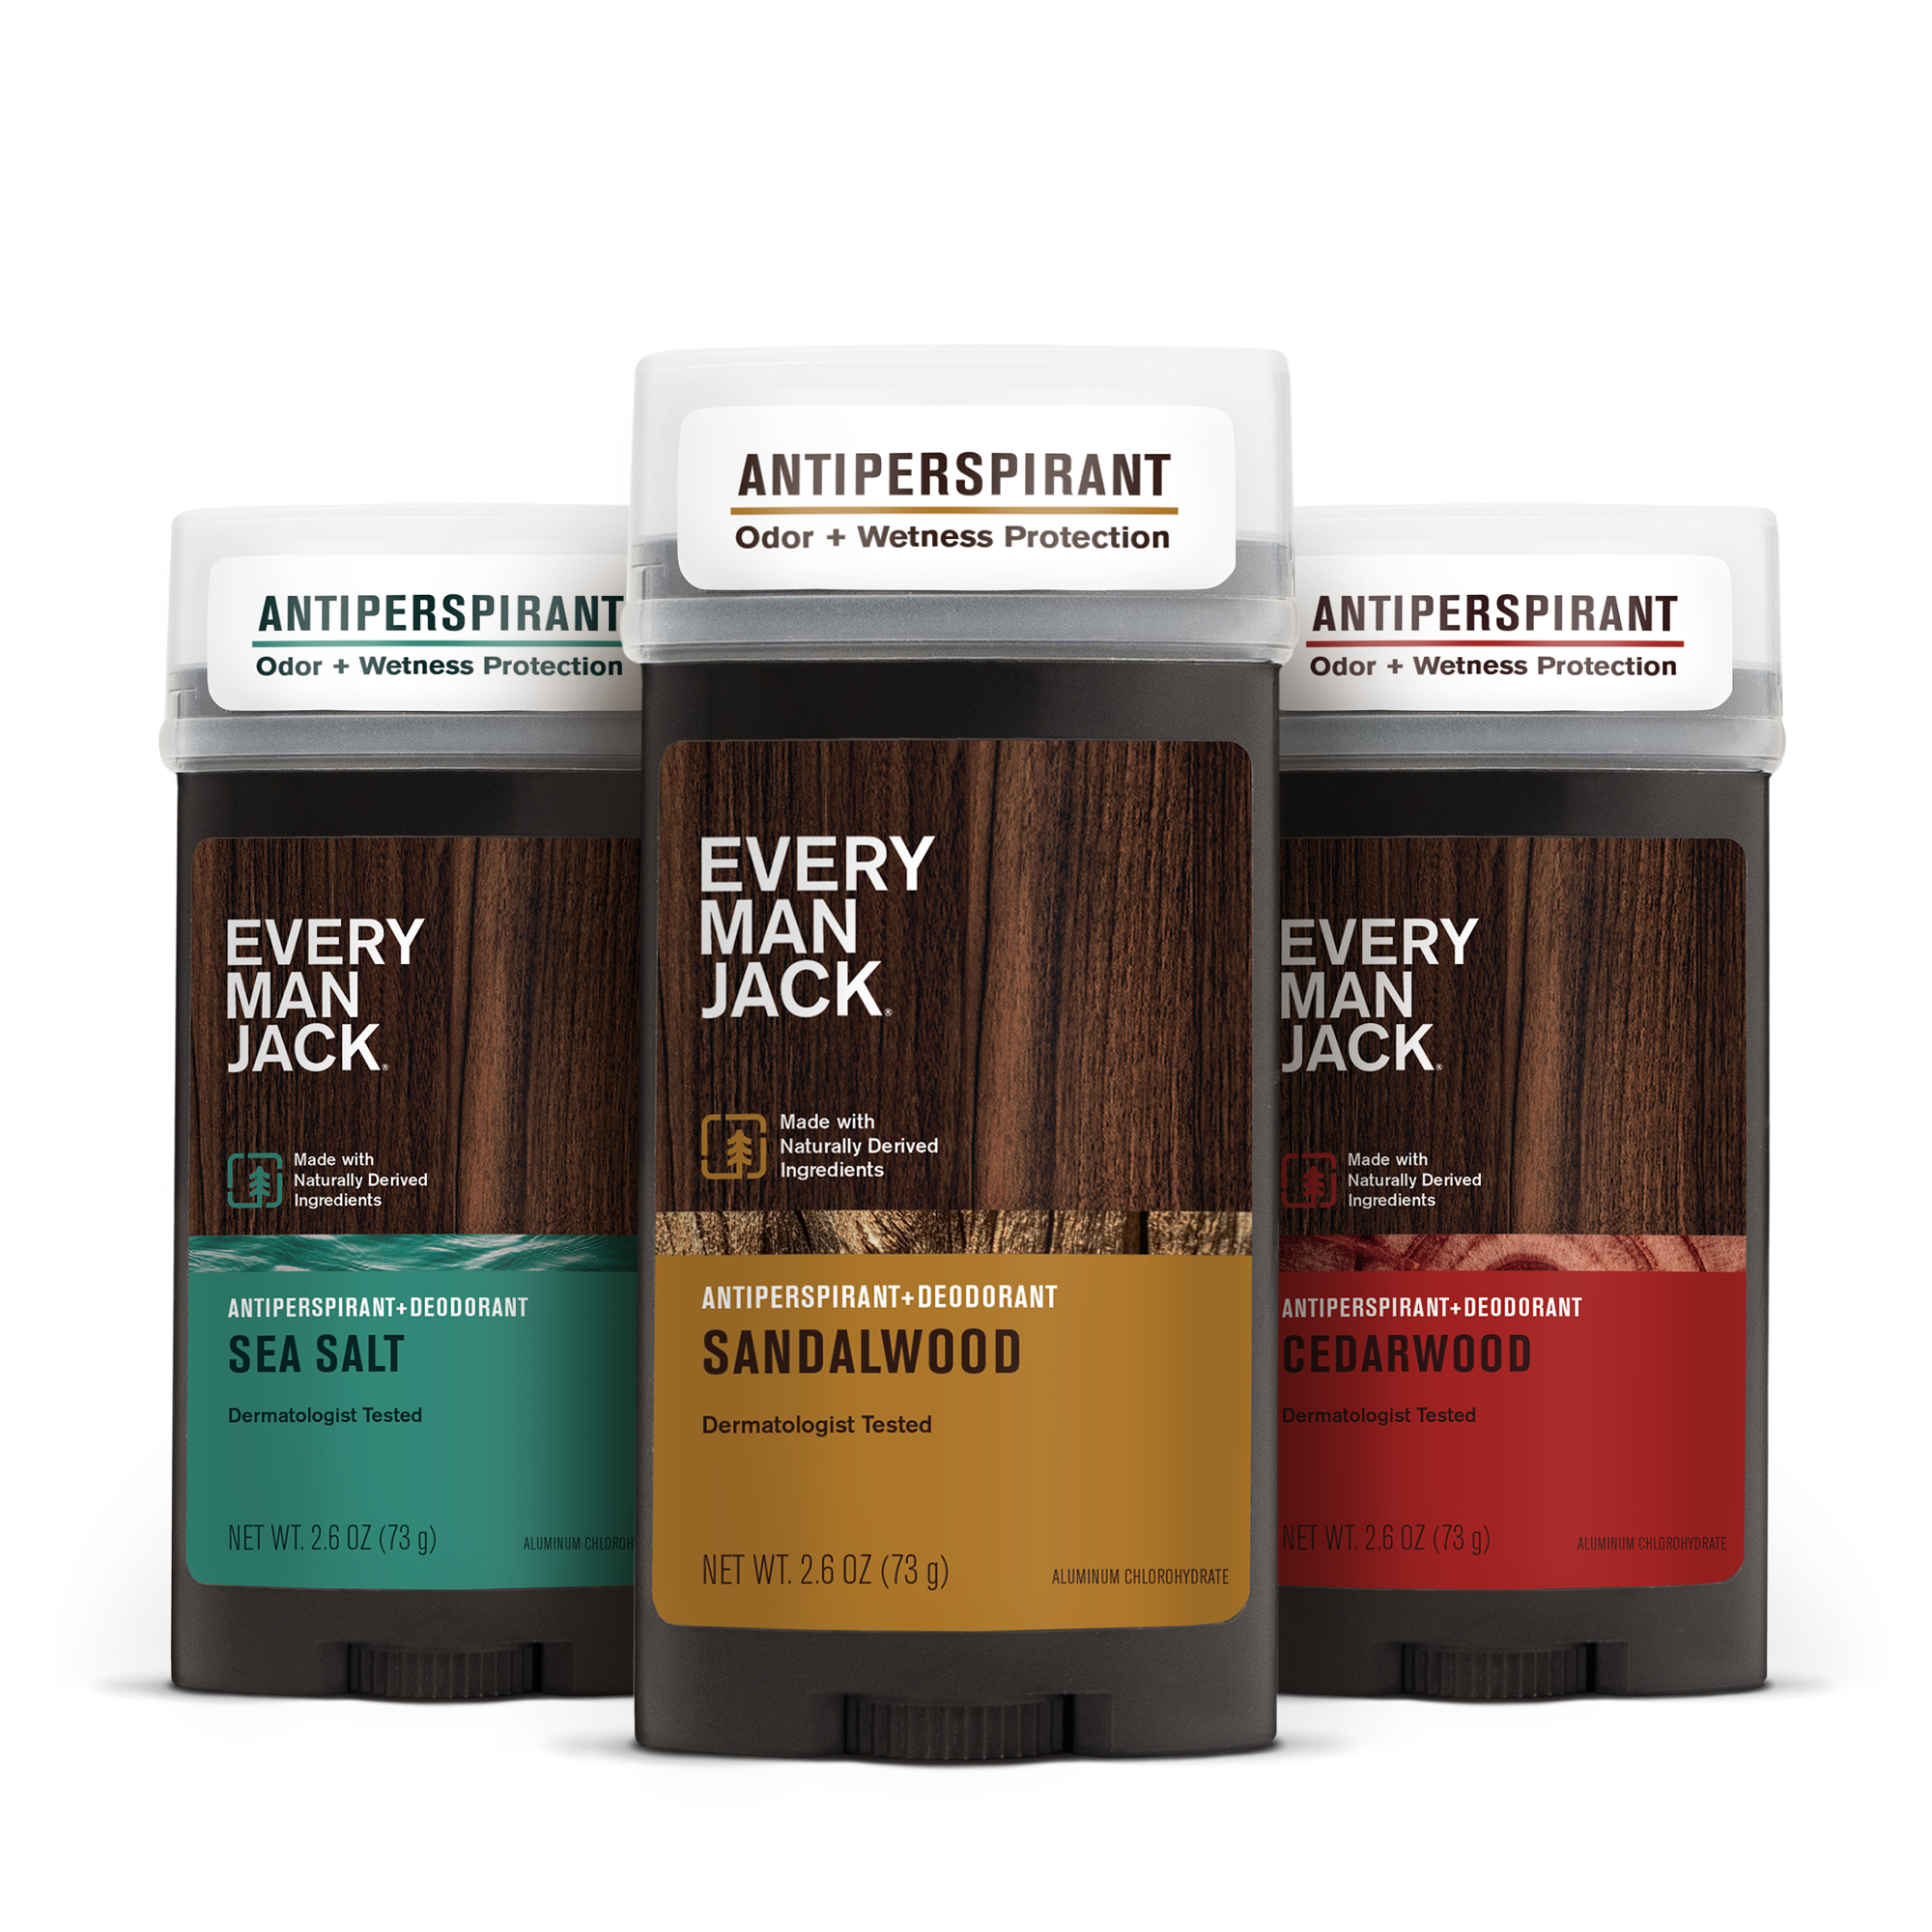 Antiperspirant + Deodorant Variety Bundle